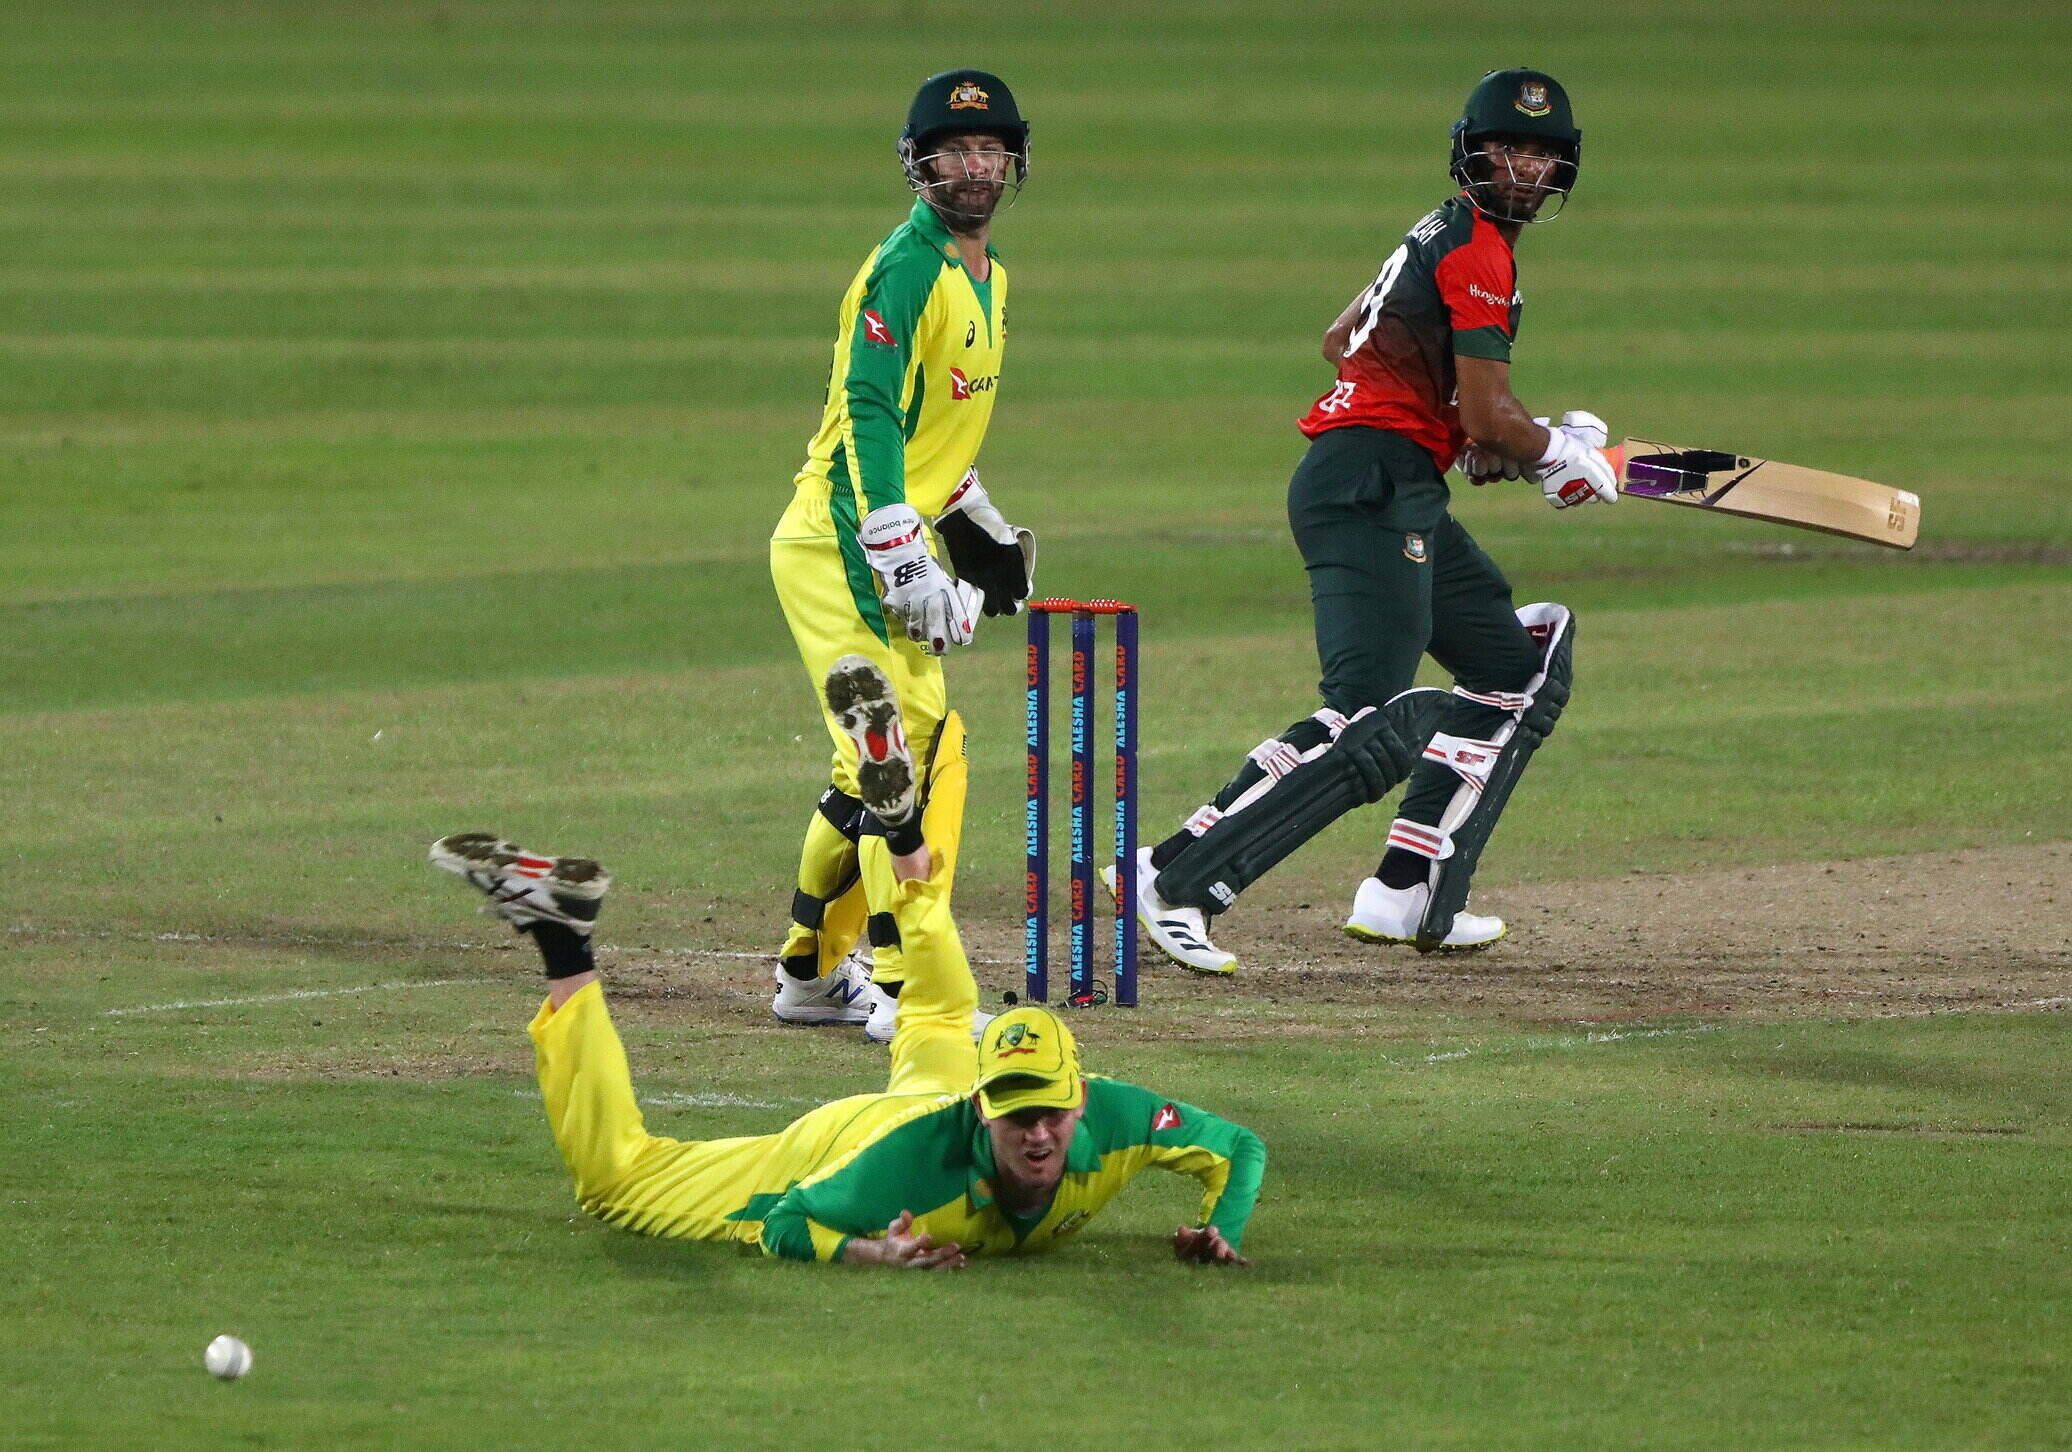 Bangladesh vs Australia, 3rd T20I